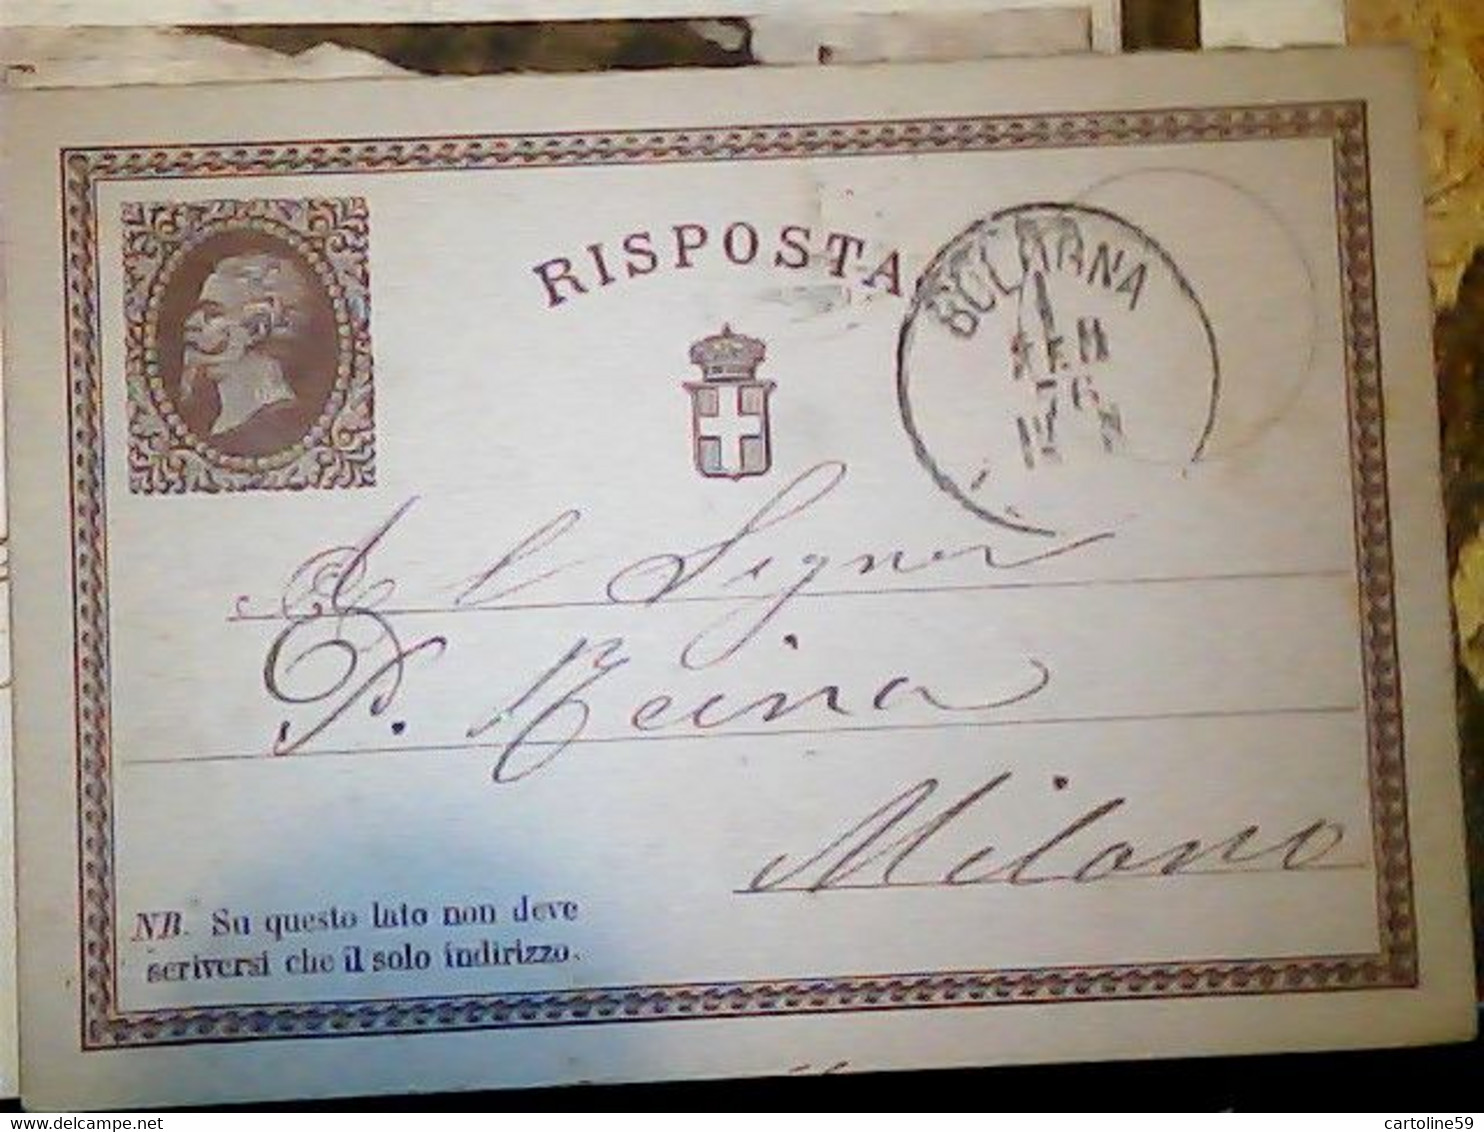 INTERO ITALIA REGNO VITTORIO EMANUELE II  RISPOSTA 1876 BOLOGNA X MILANO  IN4718 - Entiers Postaux